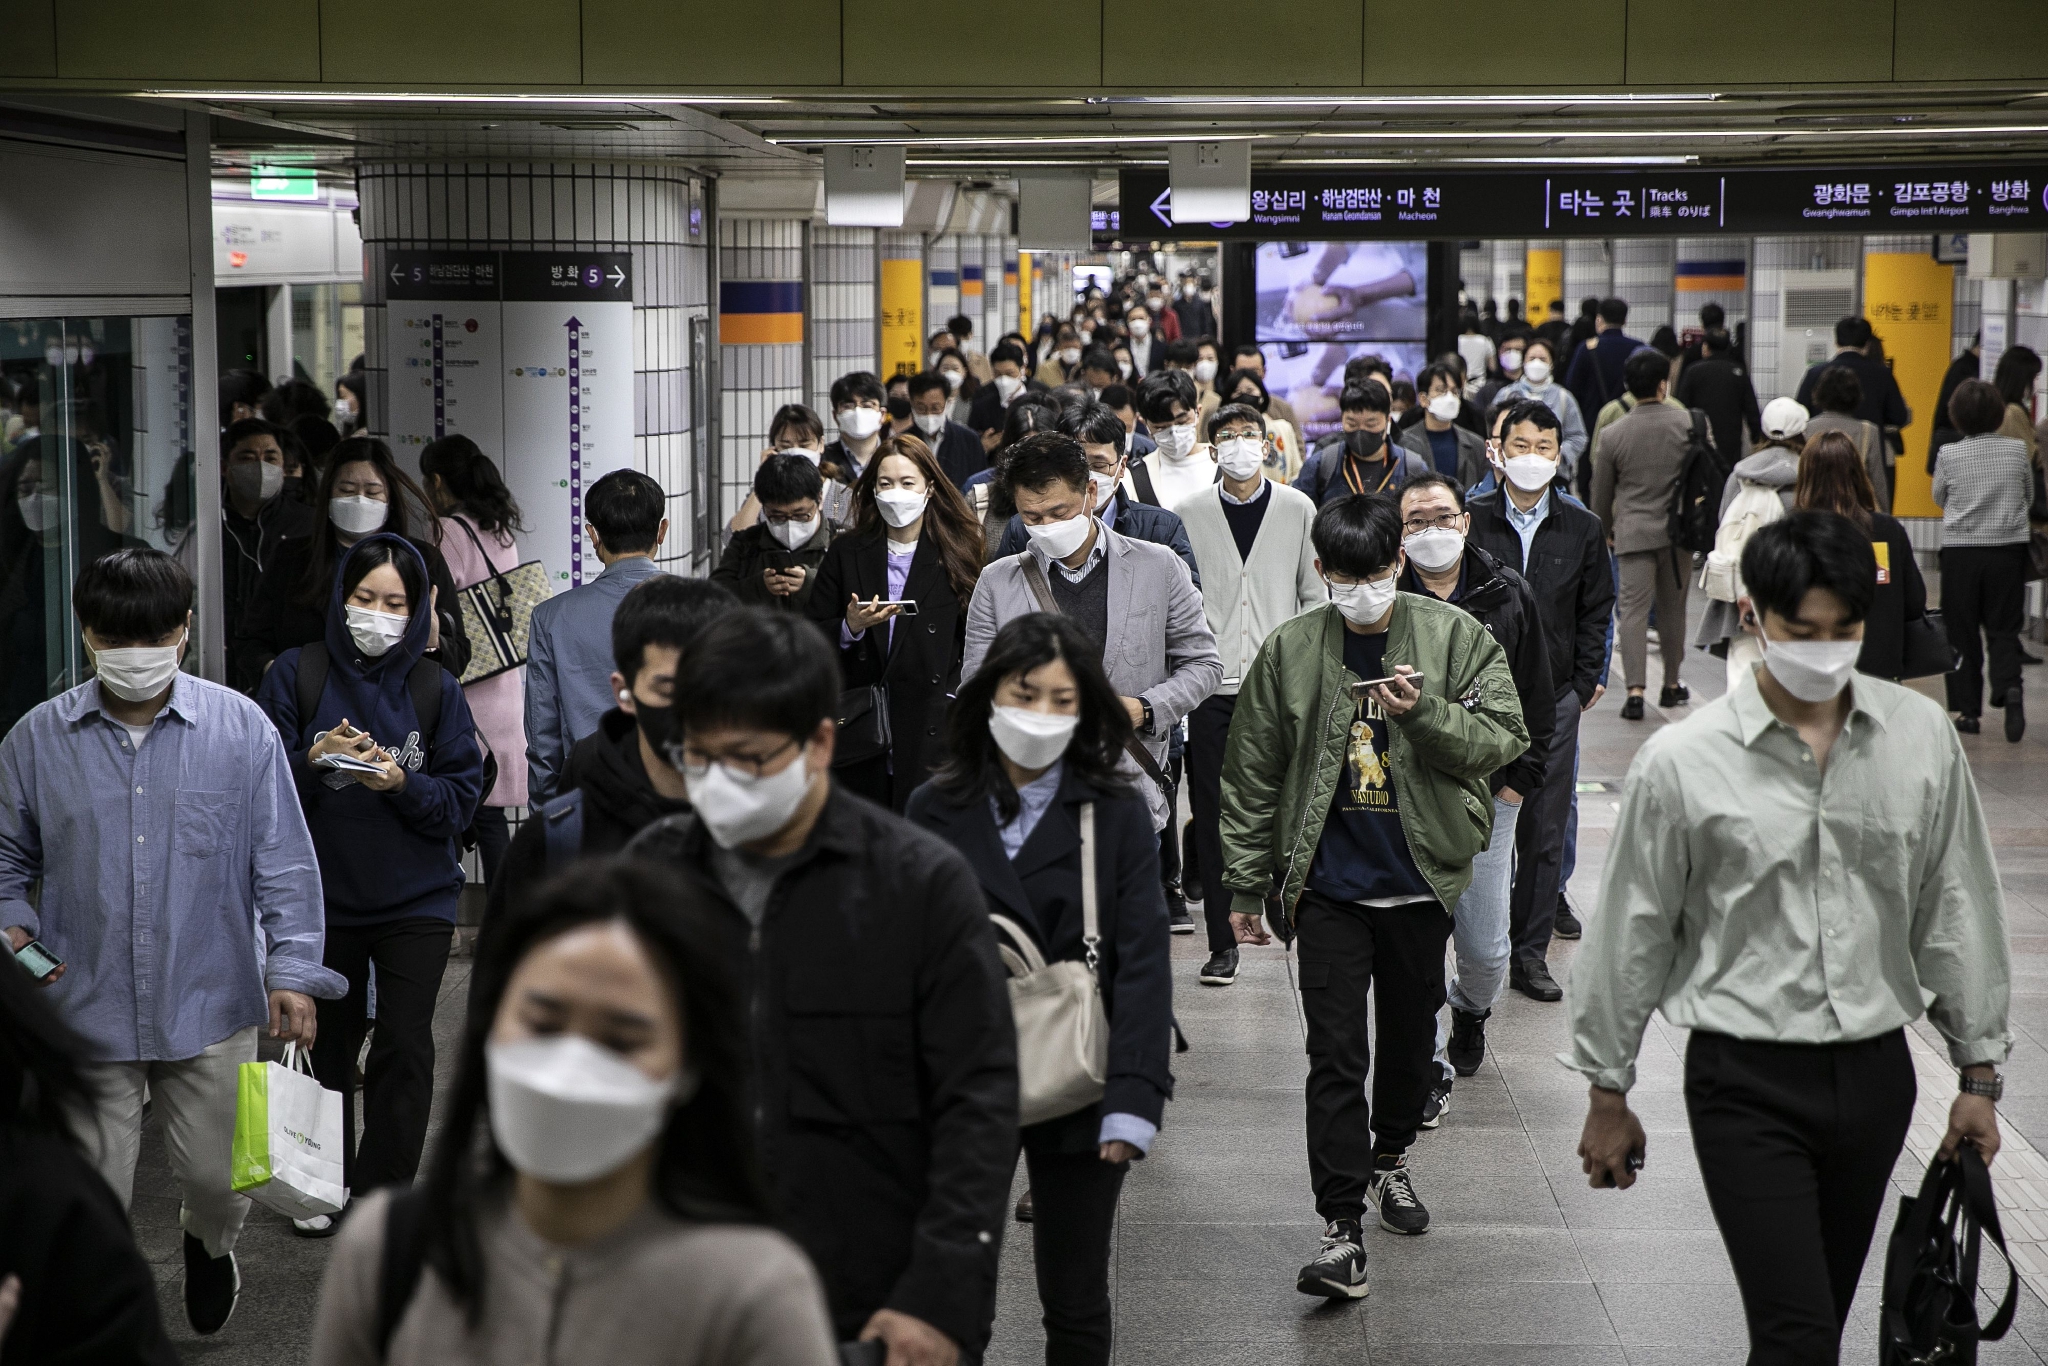 当地时间2022年4月18日，韩国首尔，地铁内的人群。图/视觉中国